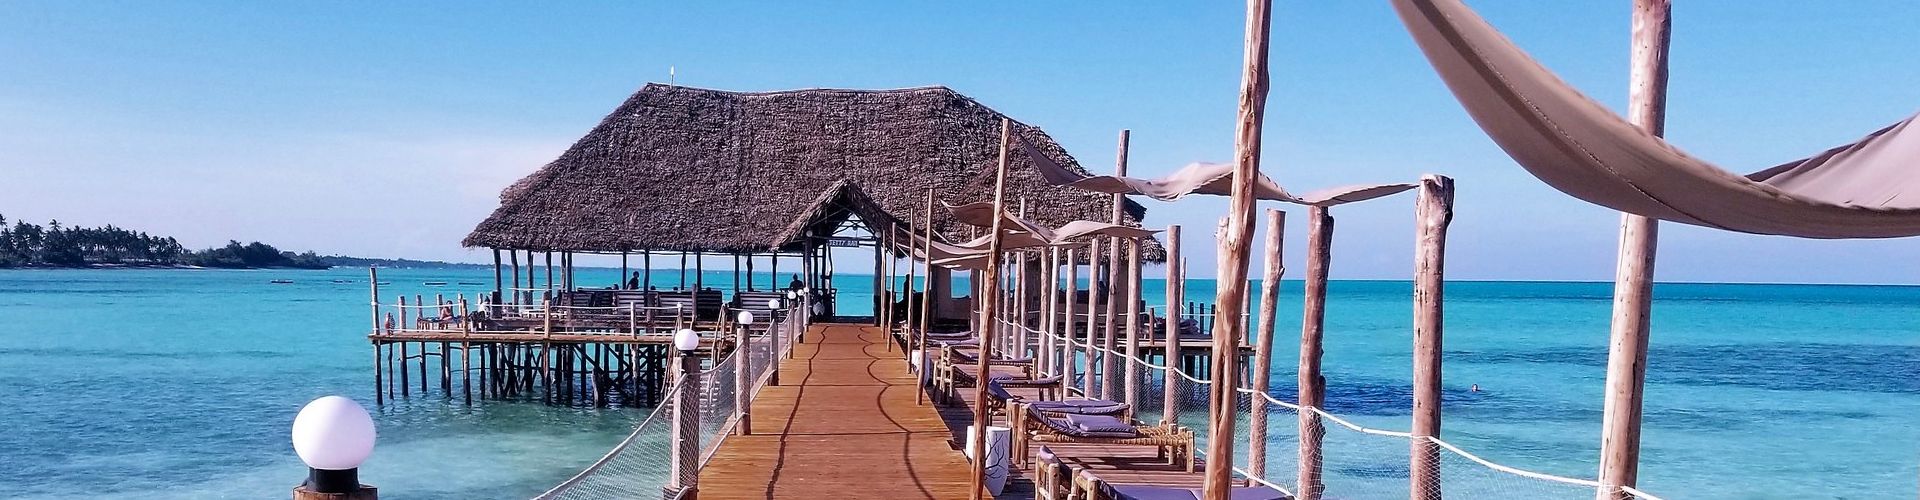 Der Steg des Reef & Beach Hotel Sansibar